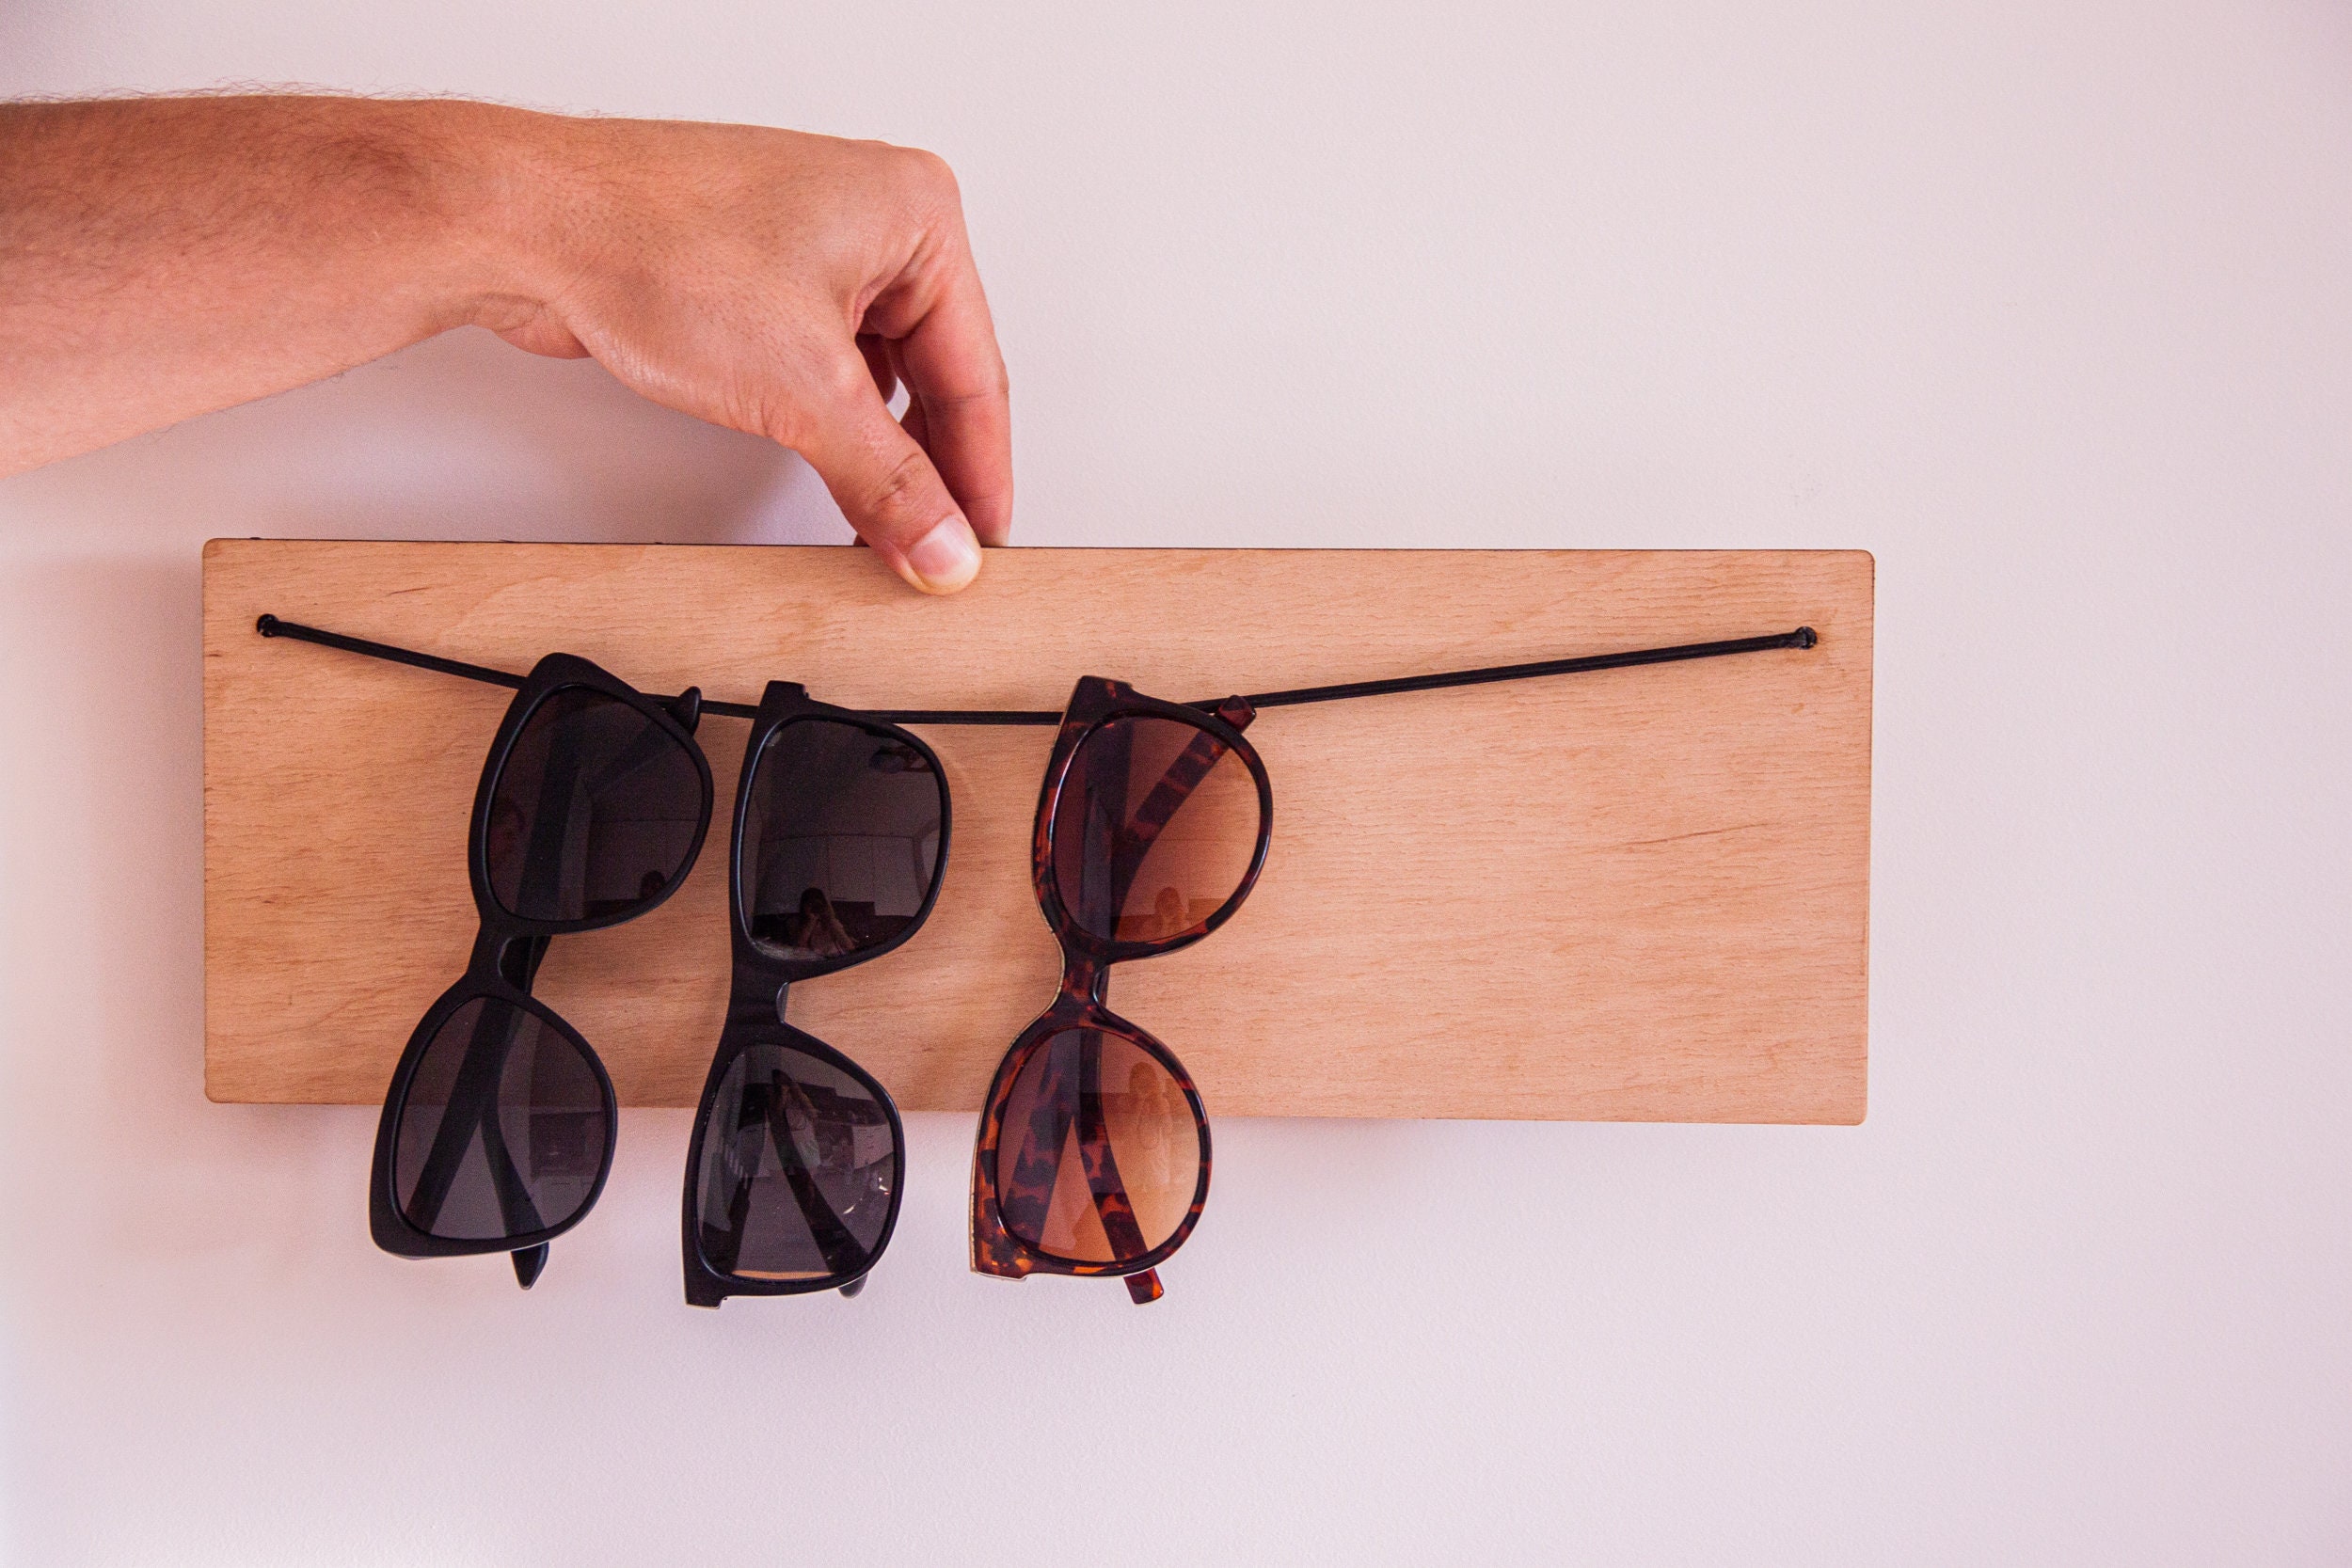 Brillenhalter Wand,Sonnenbrillenhalter Wand,Sonnenbrillenhalter Holz, Sonnenbrillenhalter Holz,Sonnenbrillenständer Holz,Brillenständer - .de